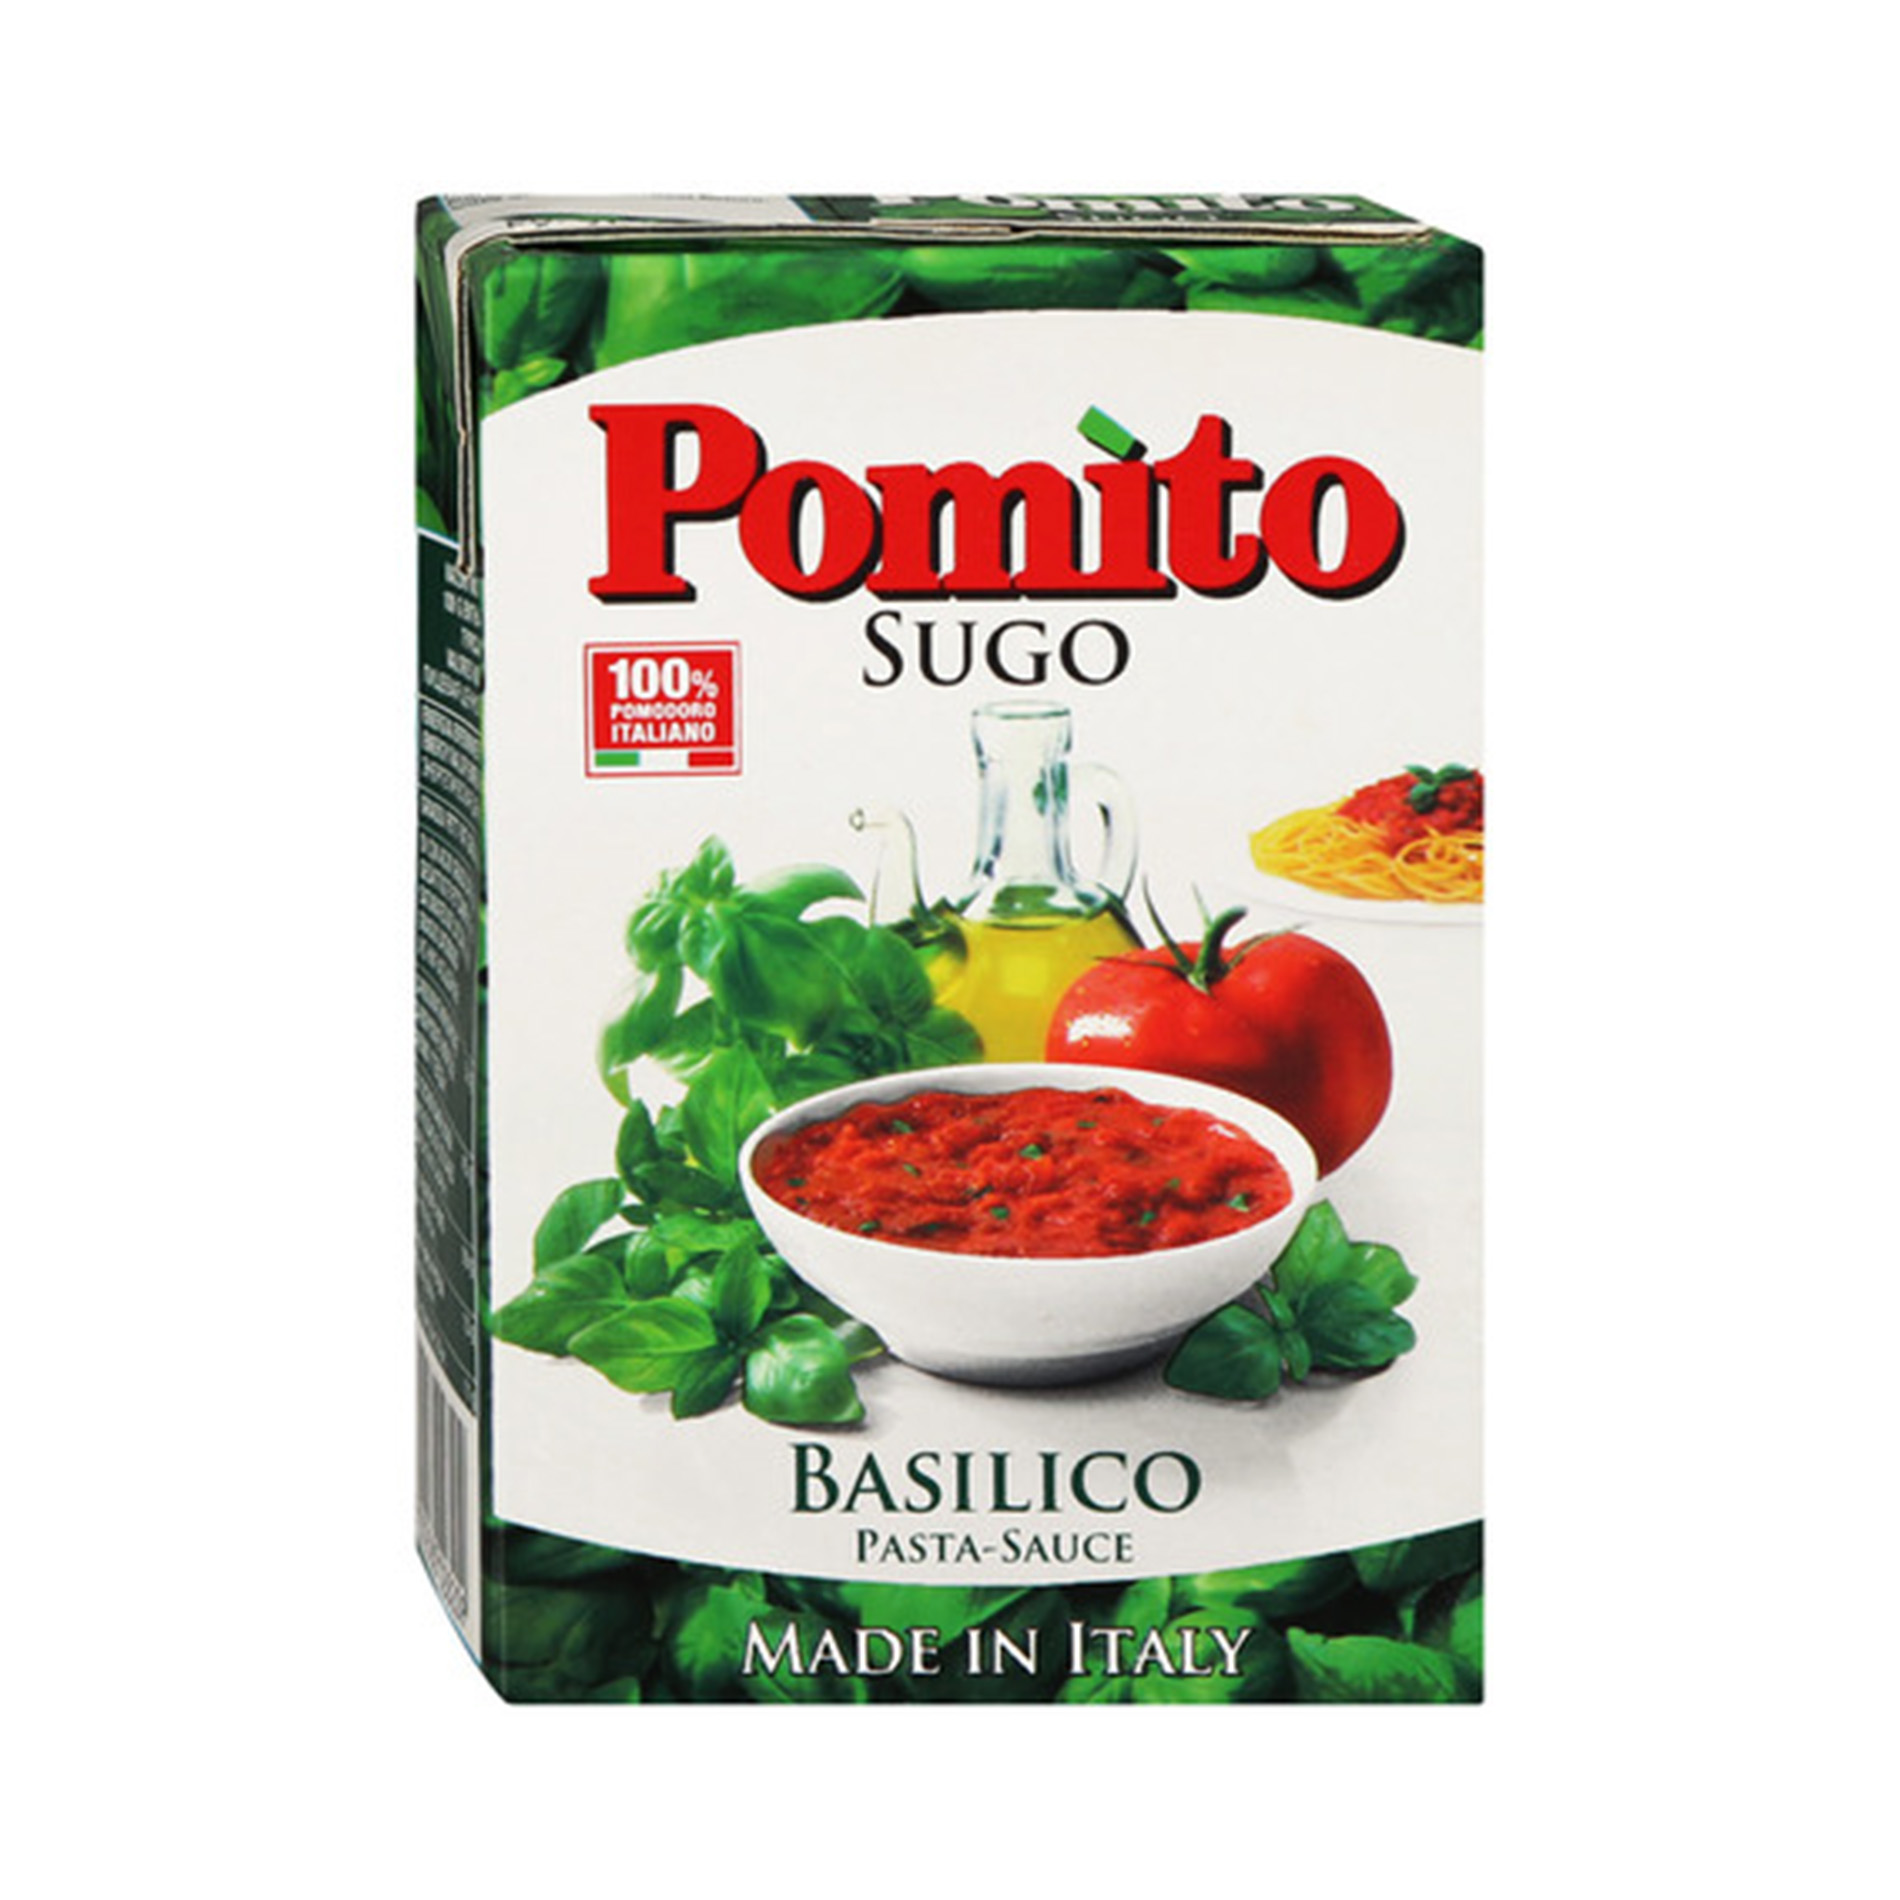 томатный соус с базиликом для пиццы фото 60